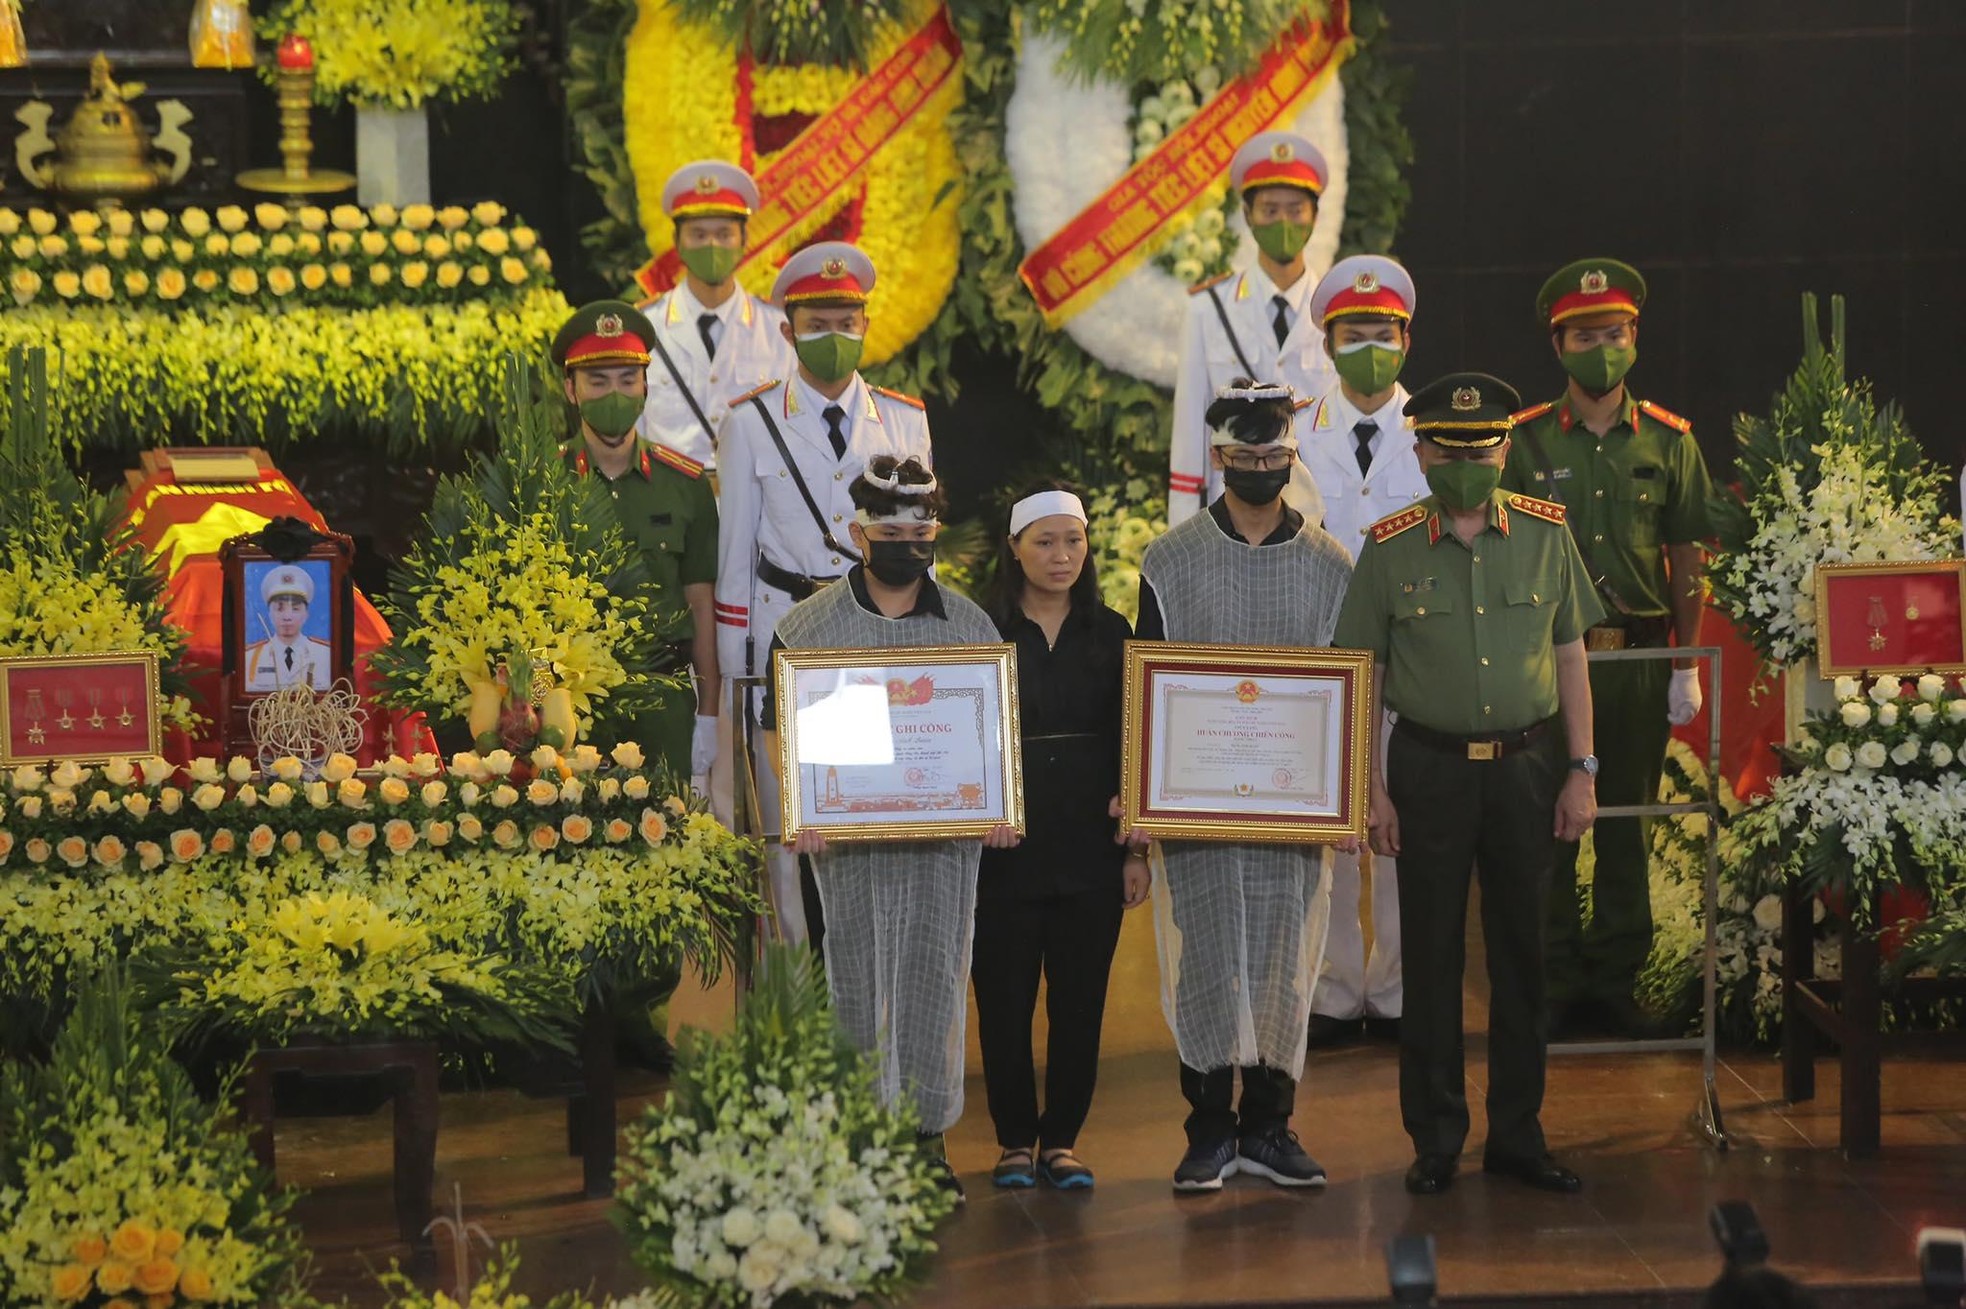 Xúc động nghi lễ phủ Quốc kỳ lên linh cữu 3 liệt sĩ cảnh sát PCCC - Ảnh 2.